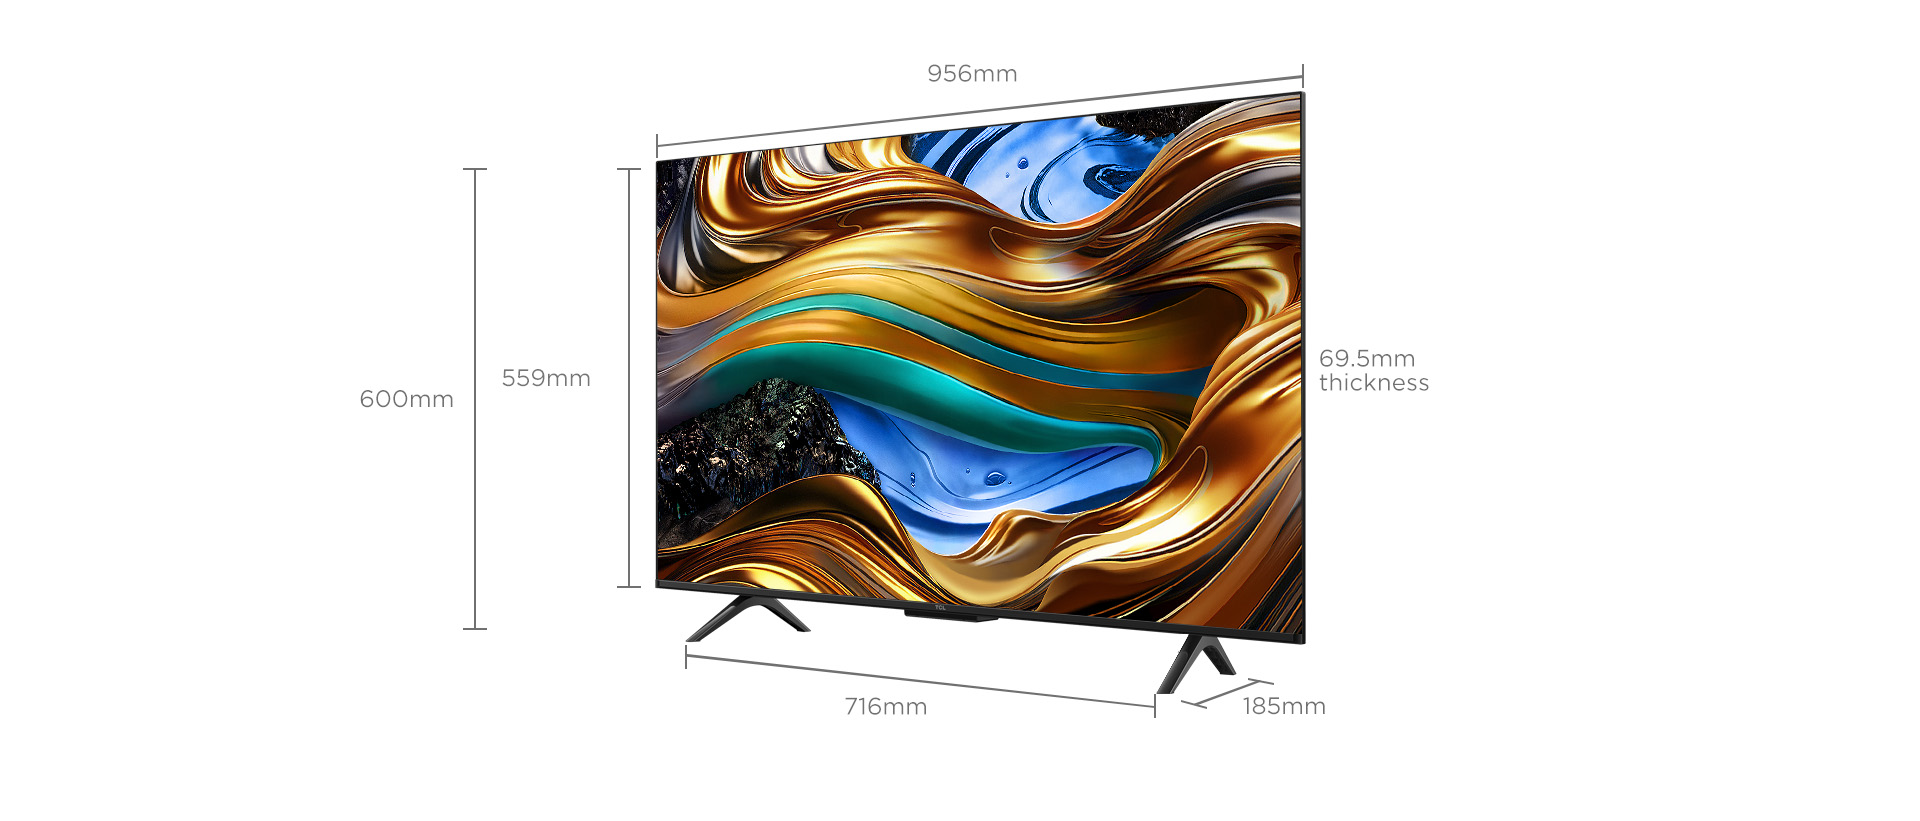 43 inch 南宫ng·28 P755 Smart TV